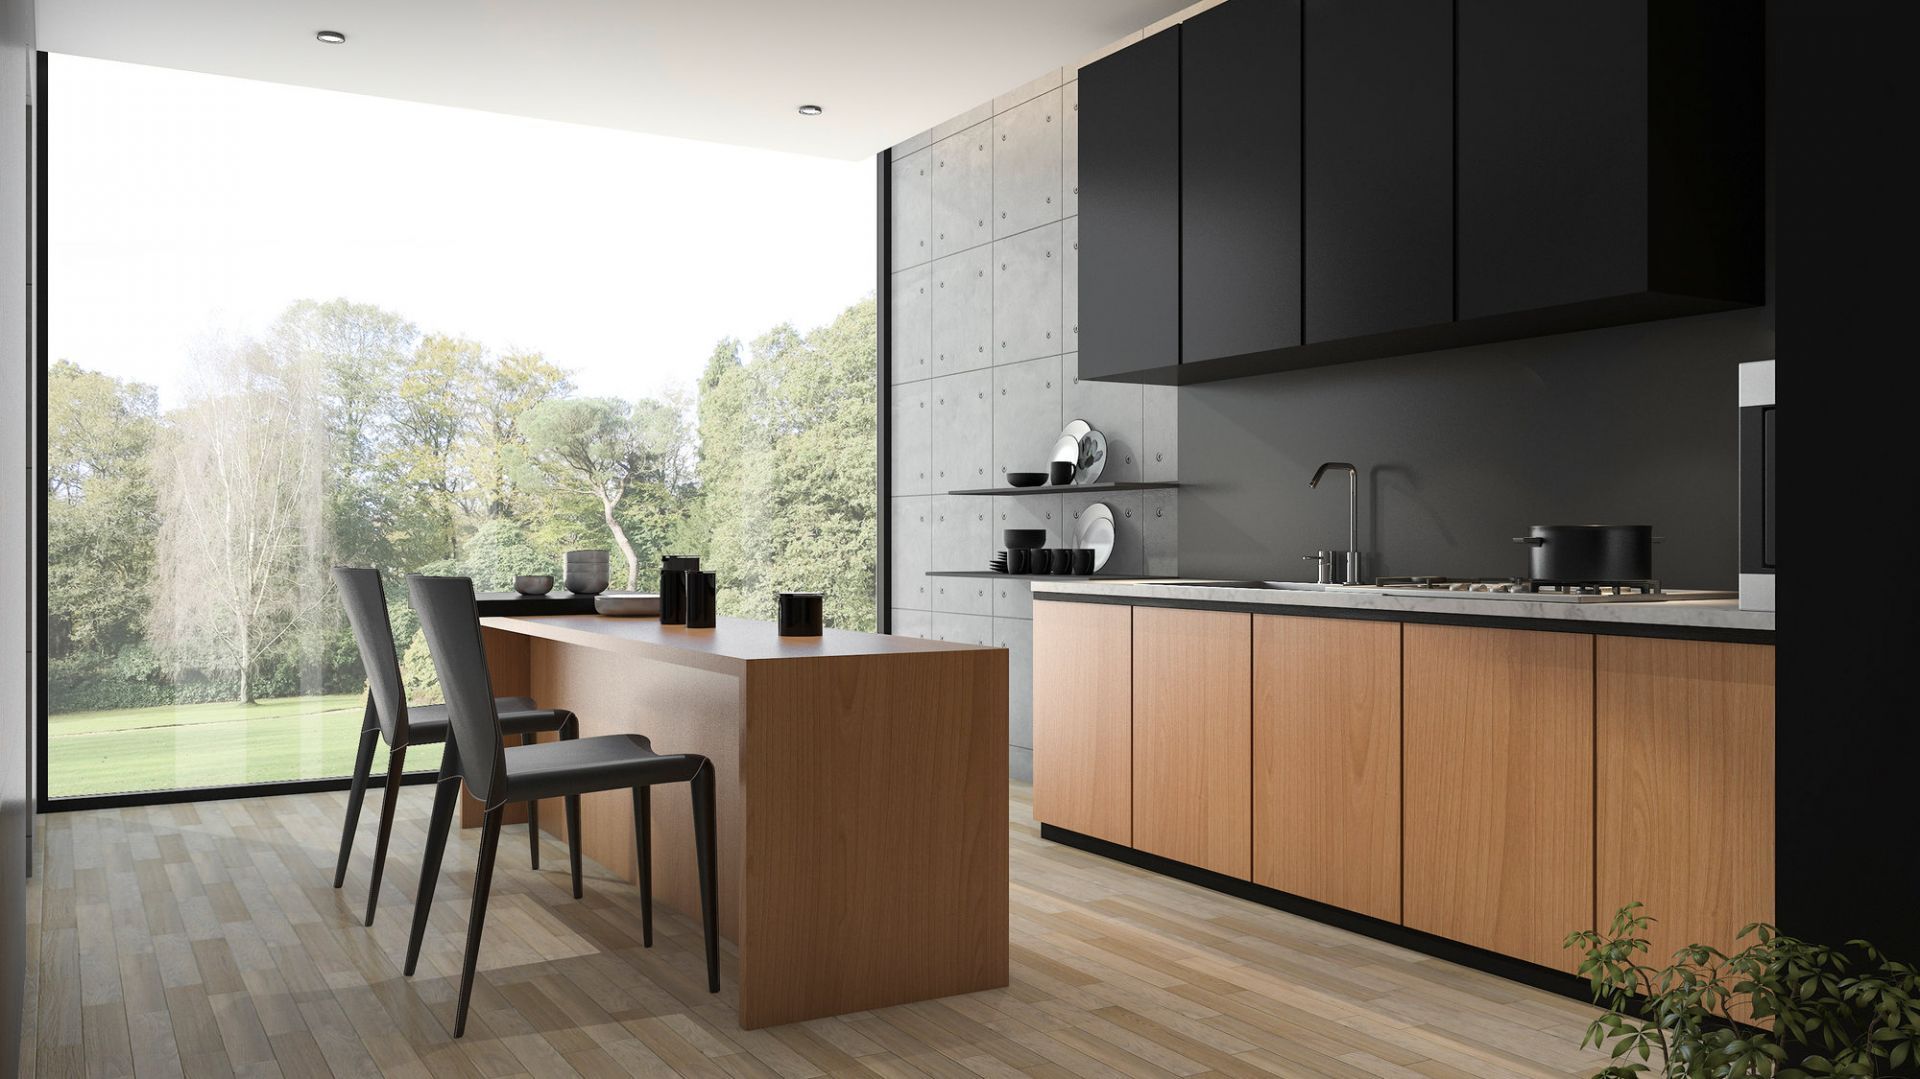 Szkło polimerowe nadaje się do wykorzystania zarówno w małej kuchni, jak i większej – otwartej, połączonej niekiedy z innym pomieszczeniem, np. salonem. Fot. Rehau